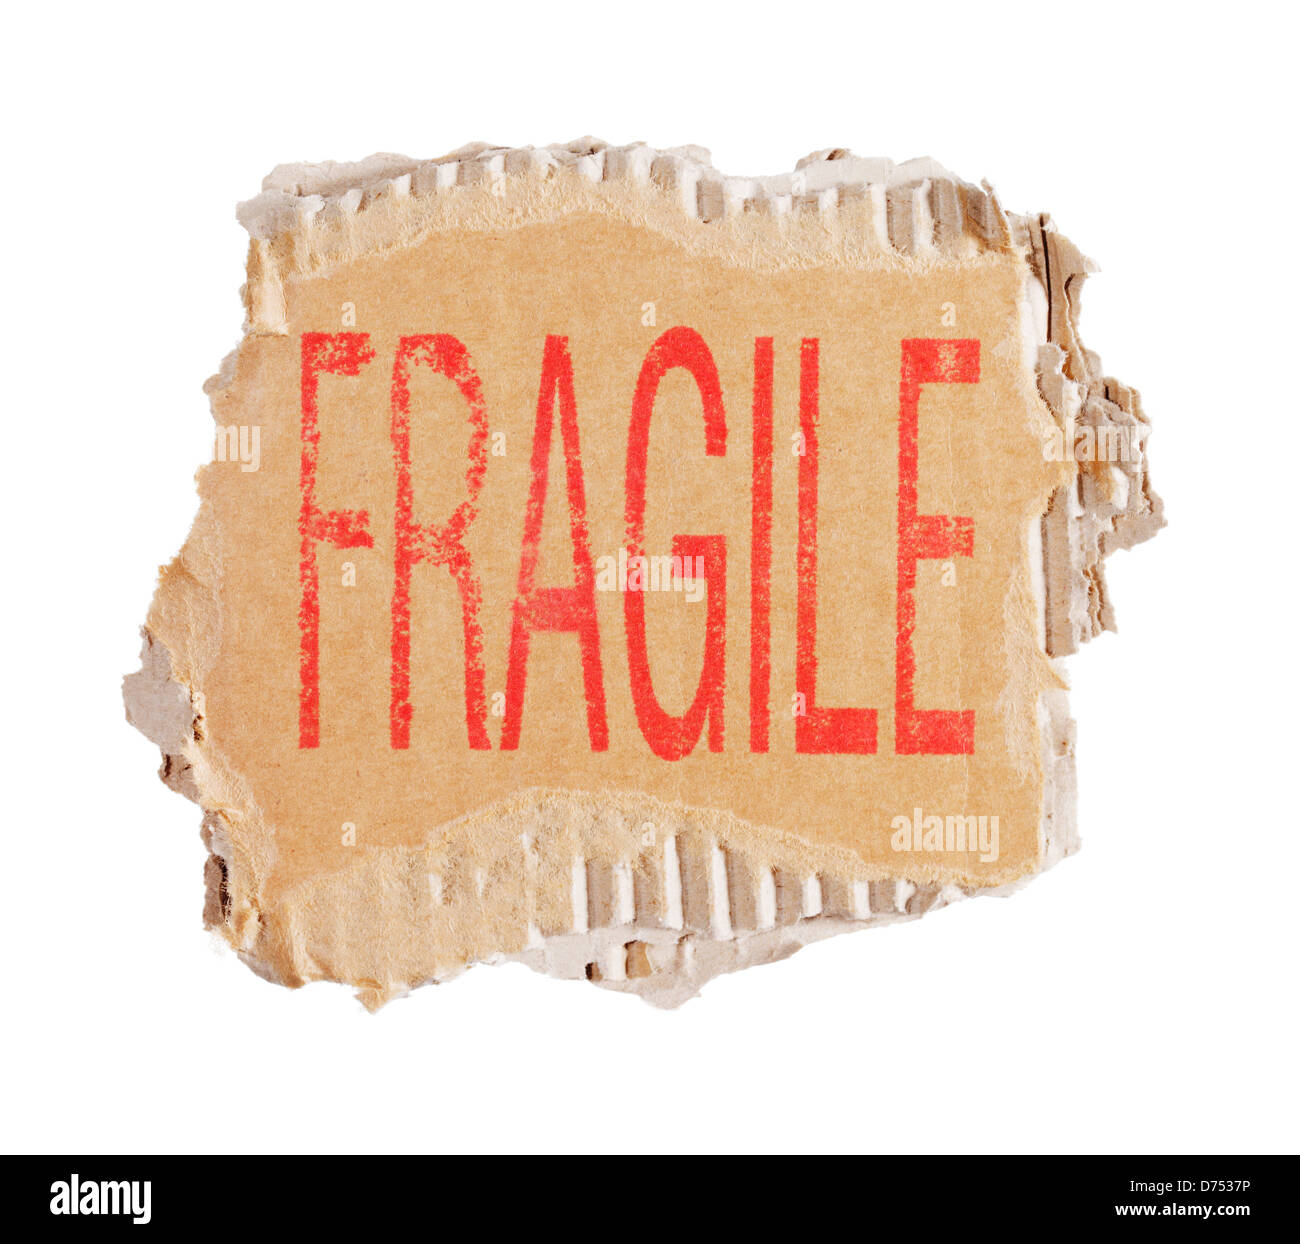 Fragile mot gravé sur un morceau de carton ondulé brun. Banque D'Images